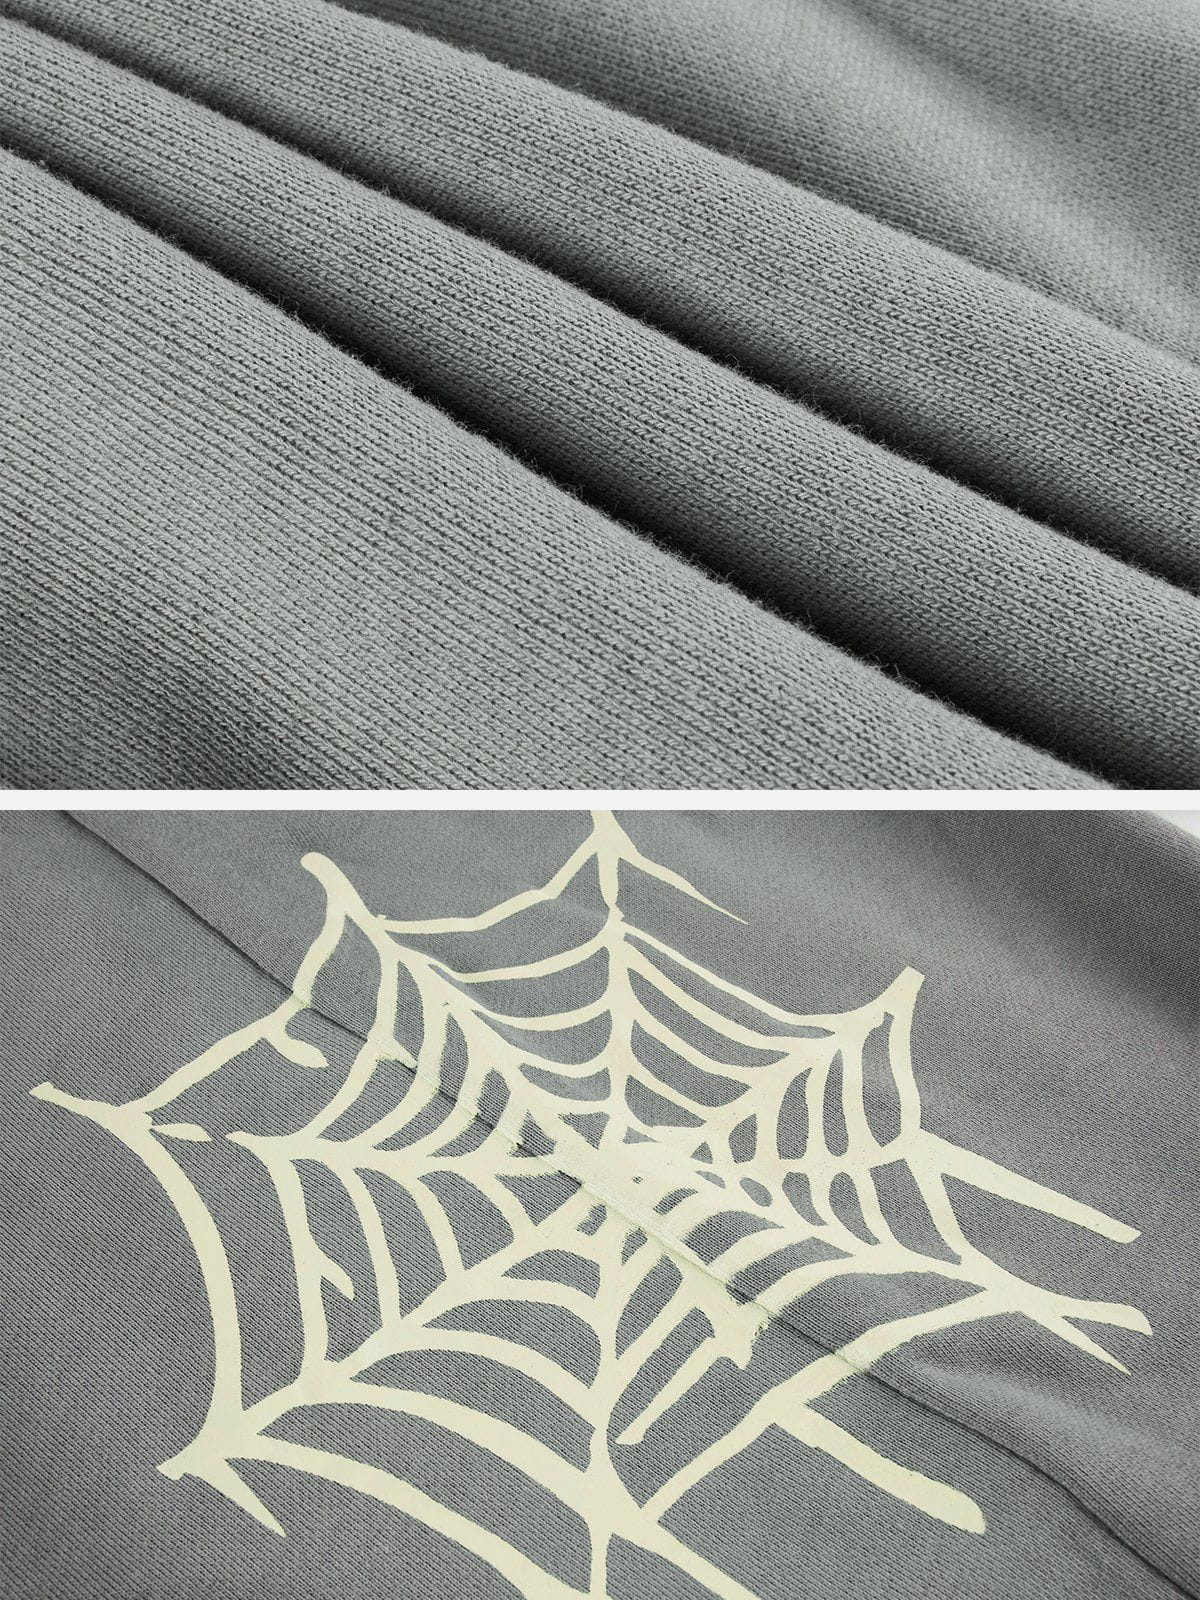 Faire Echo Spider Web Print Pants Faire Echo